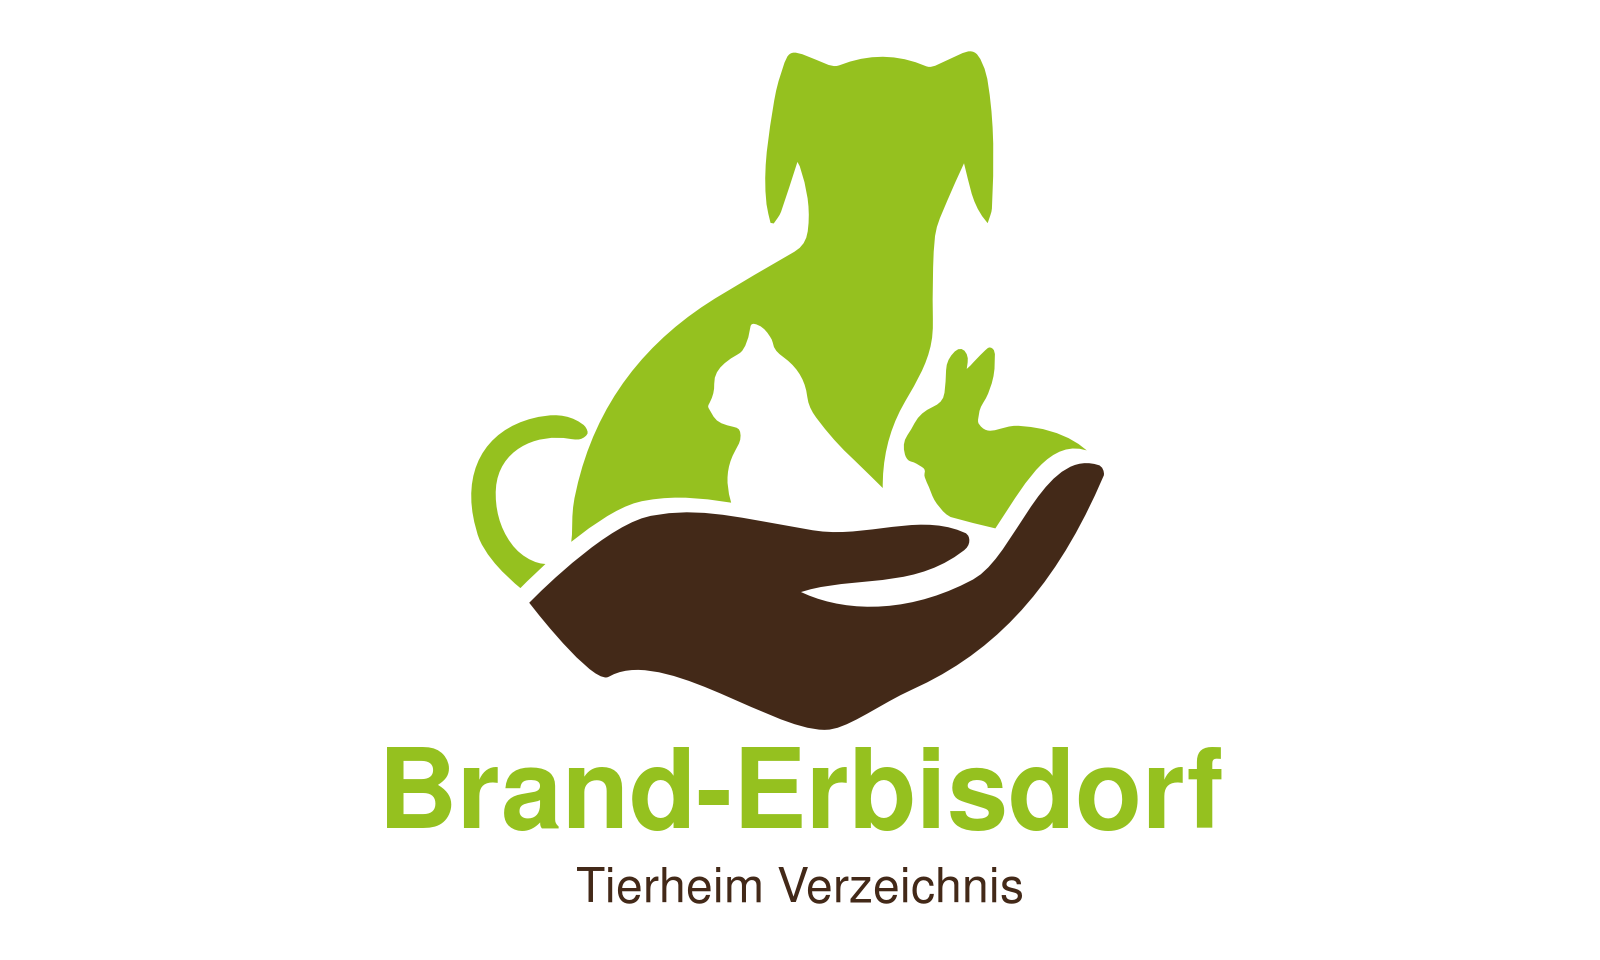 Tierheim Brand-Erbisdorf